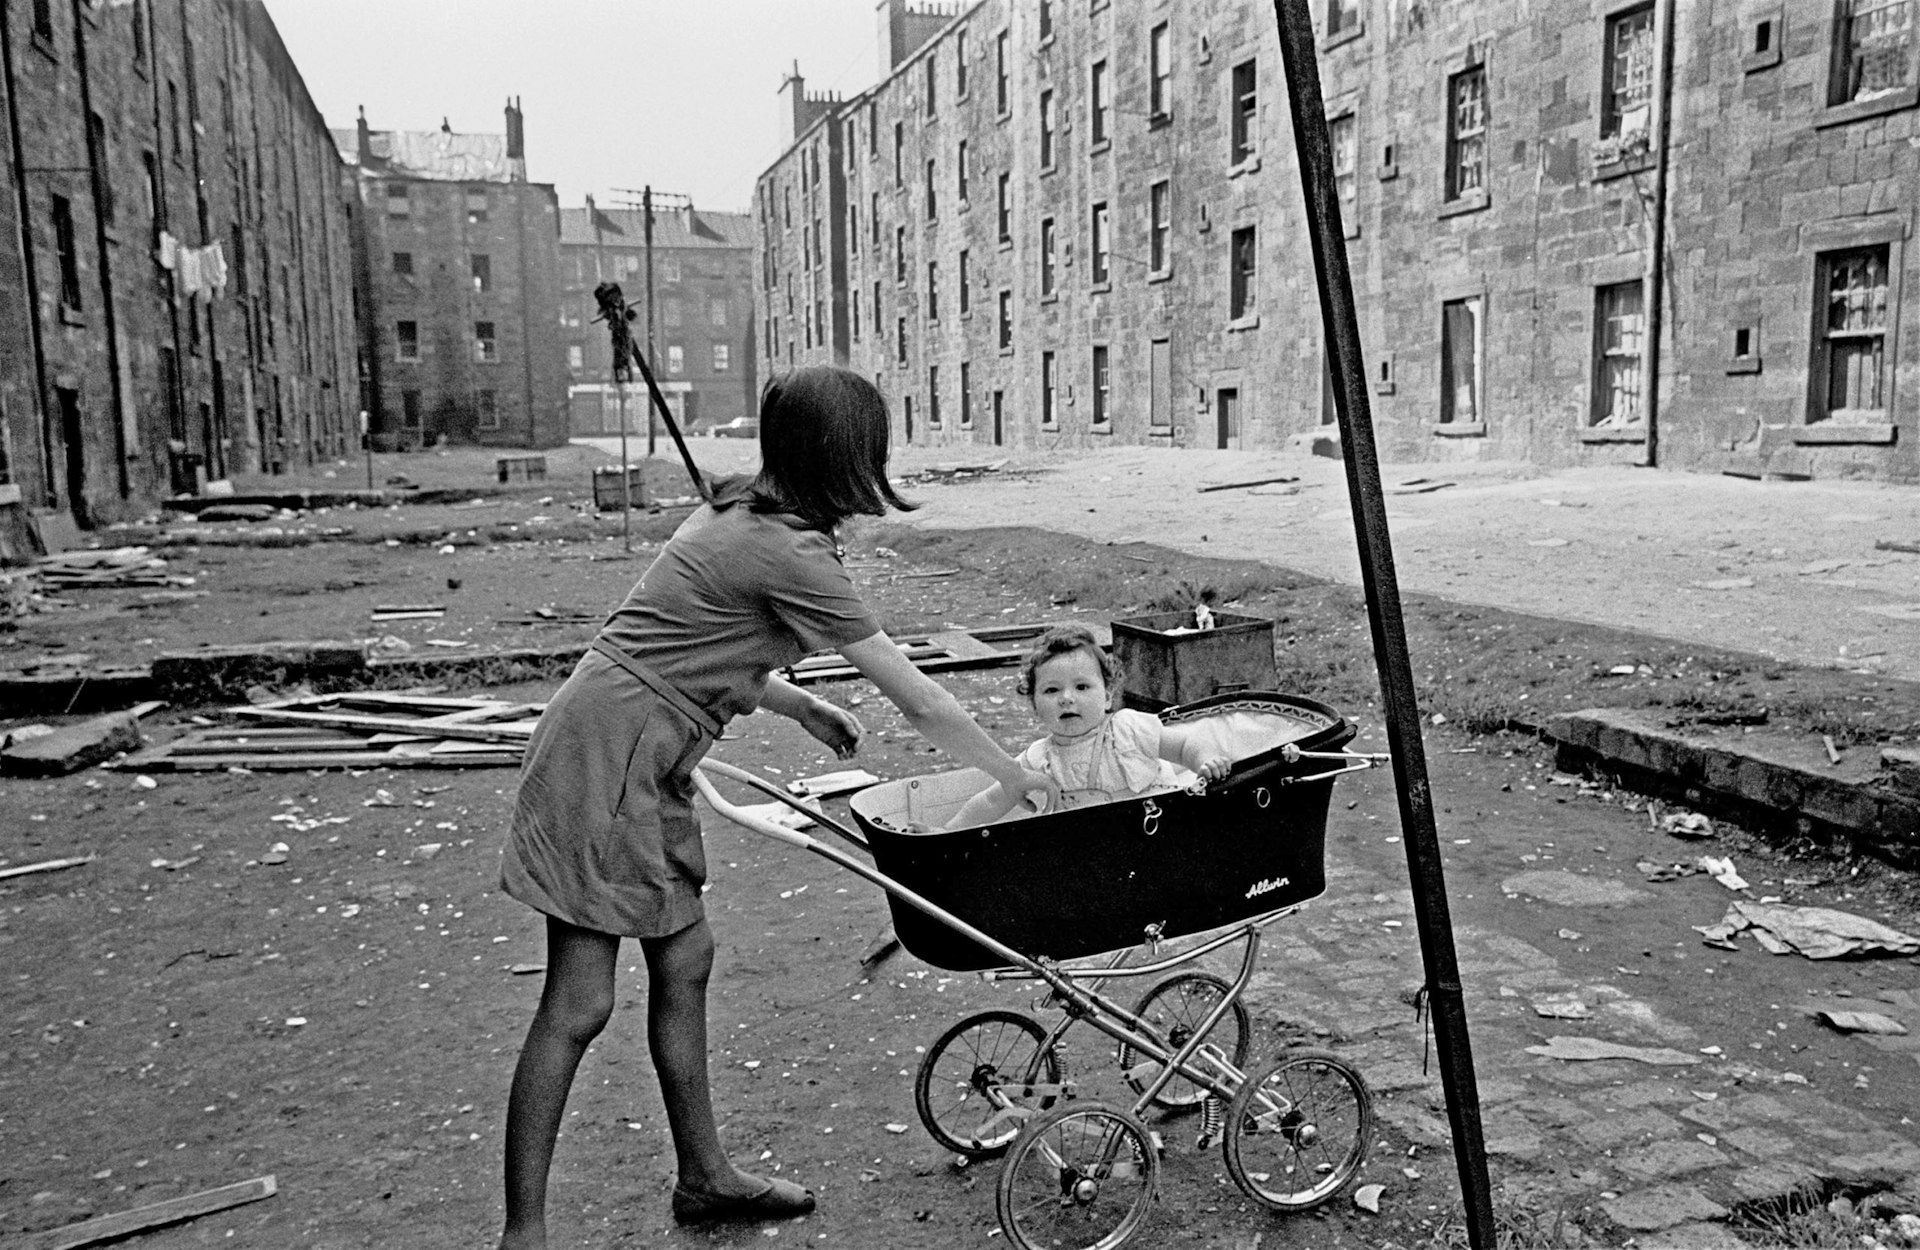 Photos of Britain‘s slum housing crisis in the ‘60s